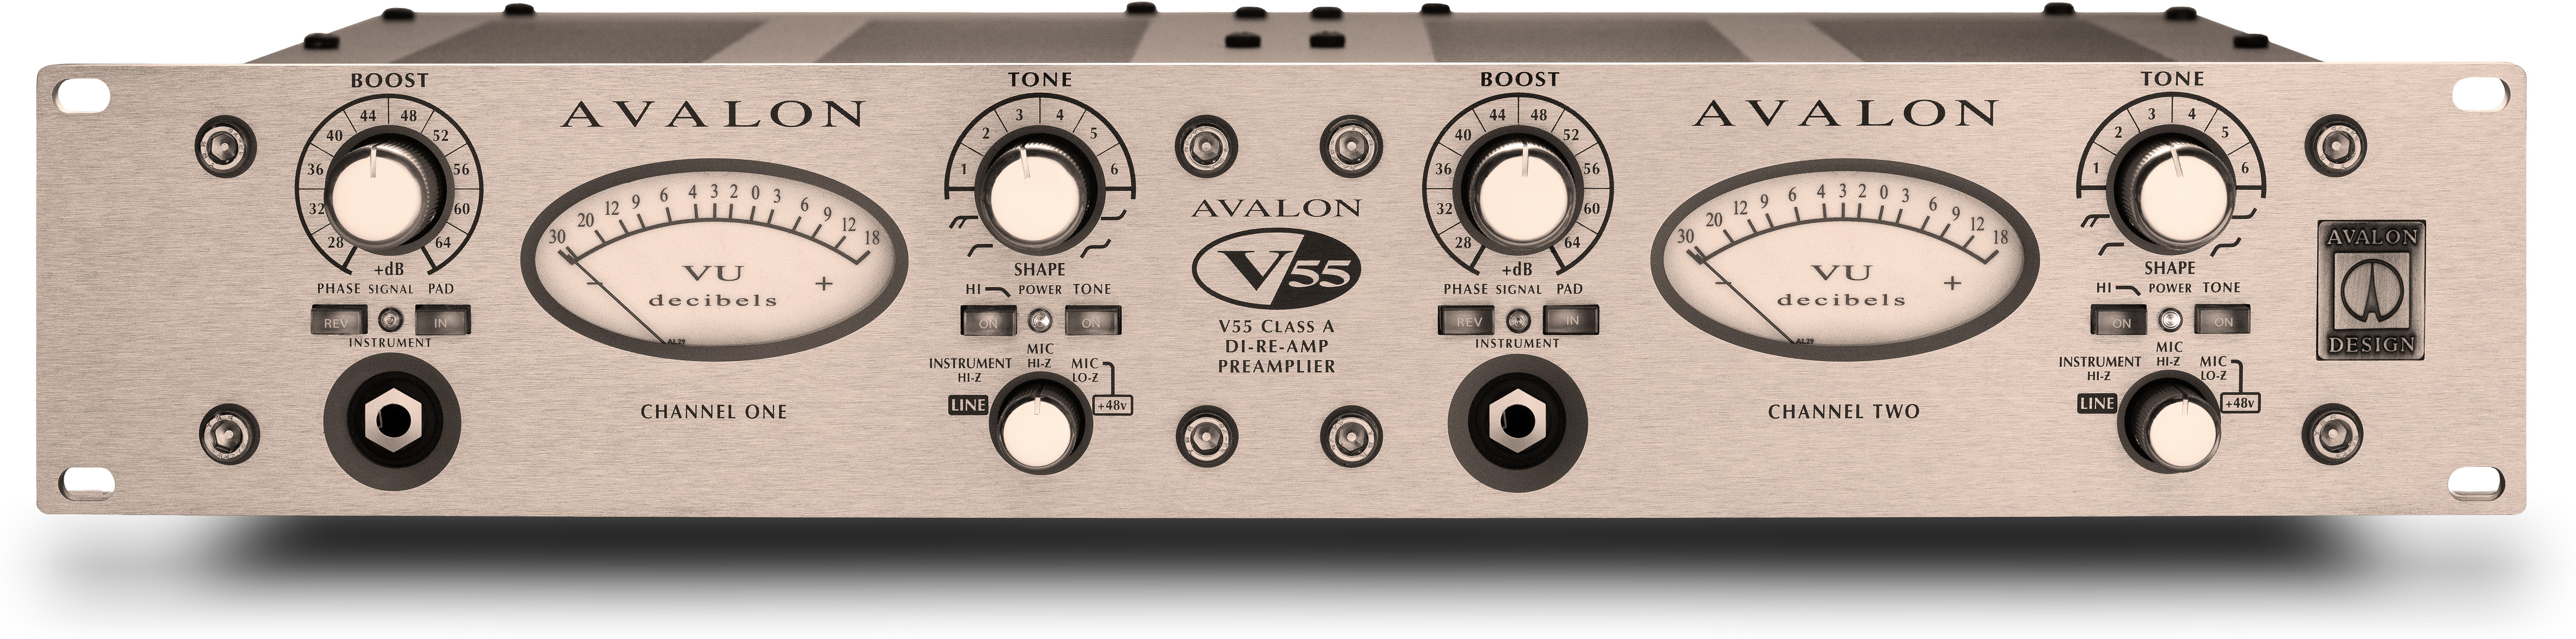 Avalon Design V55 - Preamp - Main picture